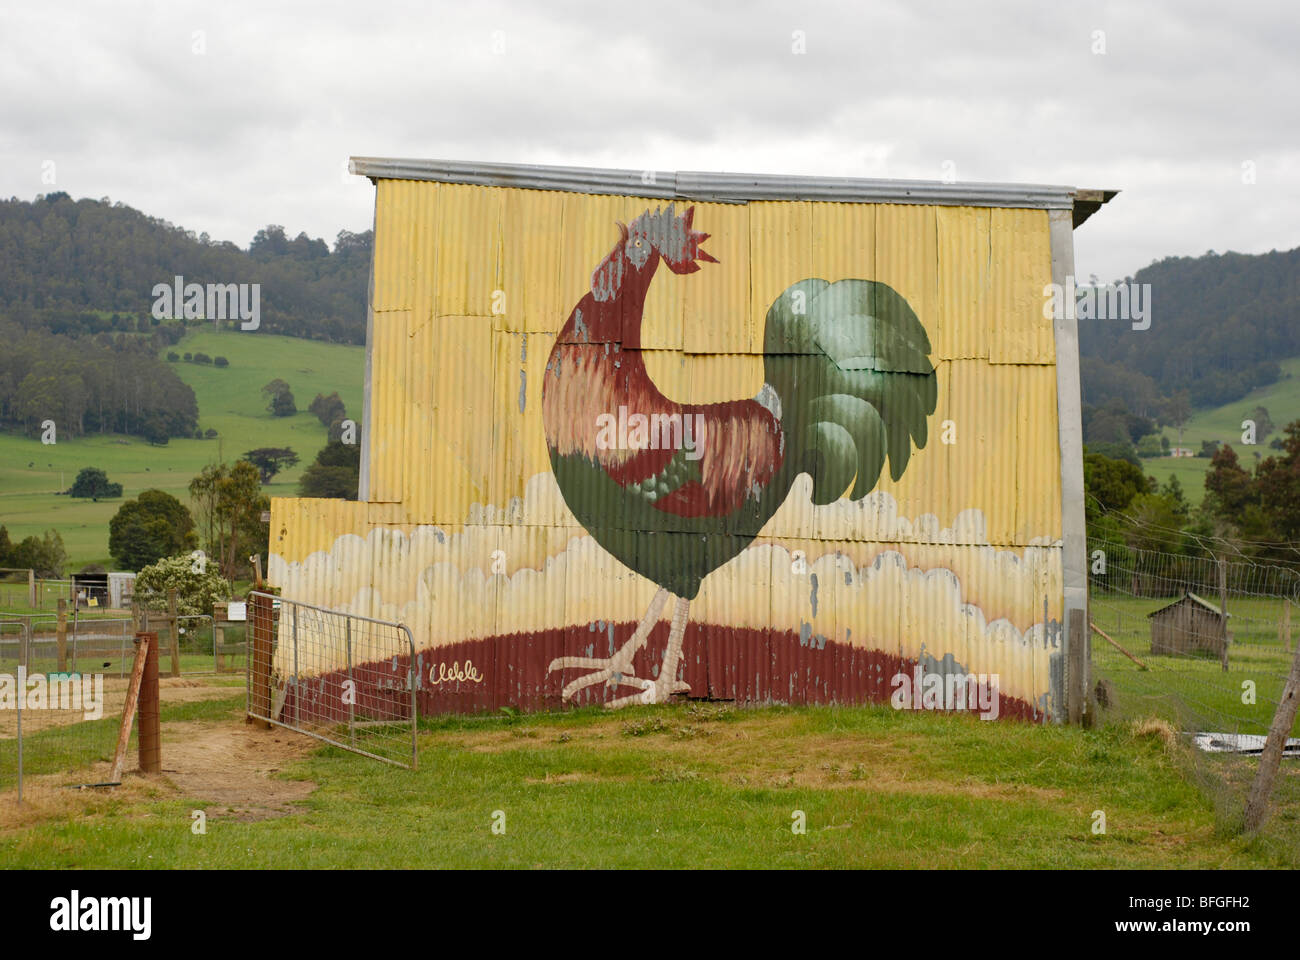 Coq peint sur hay shed dans les escadres Wildlife Park, la Tasmanie. Banque D'Images